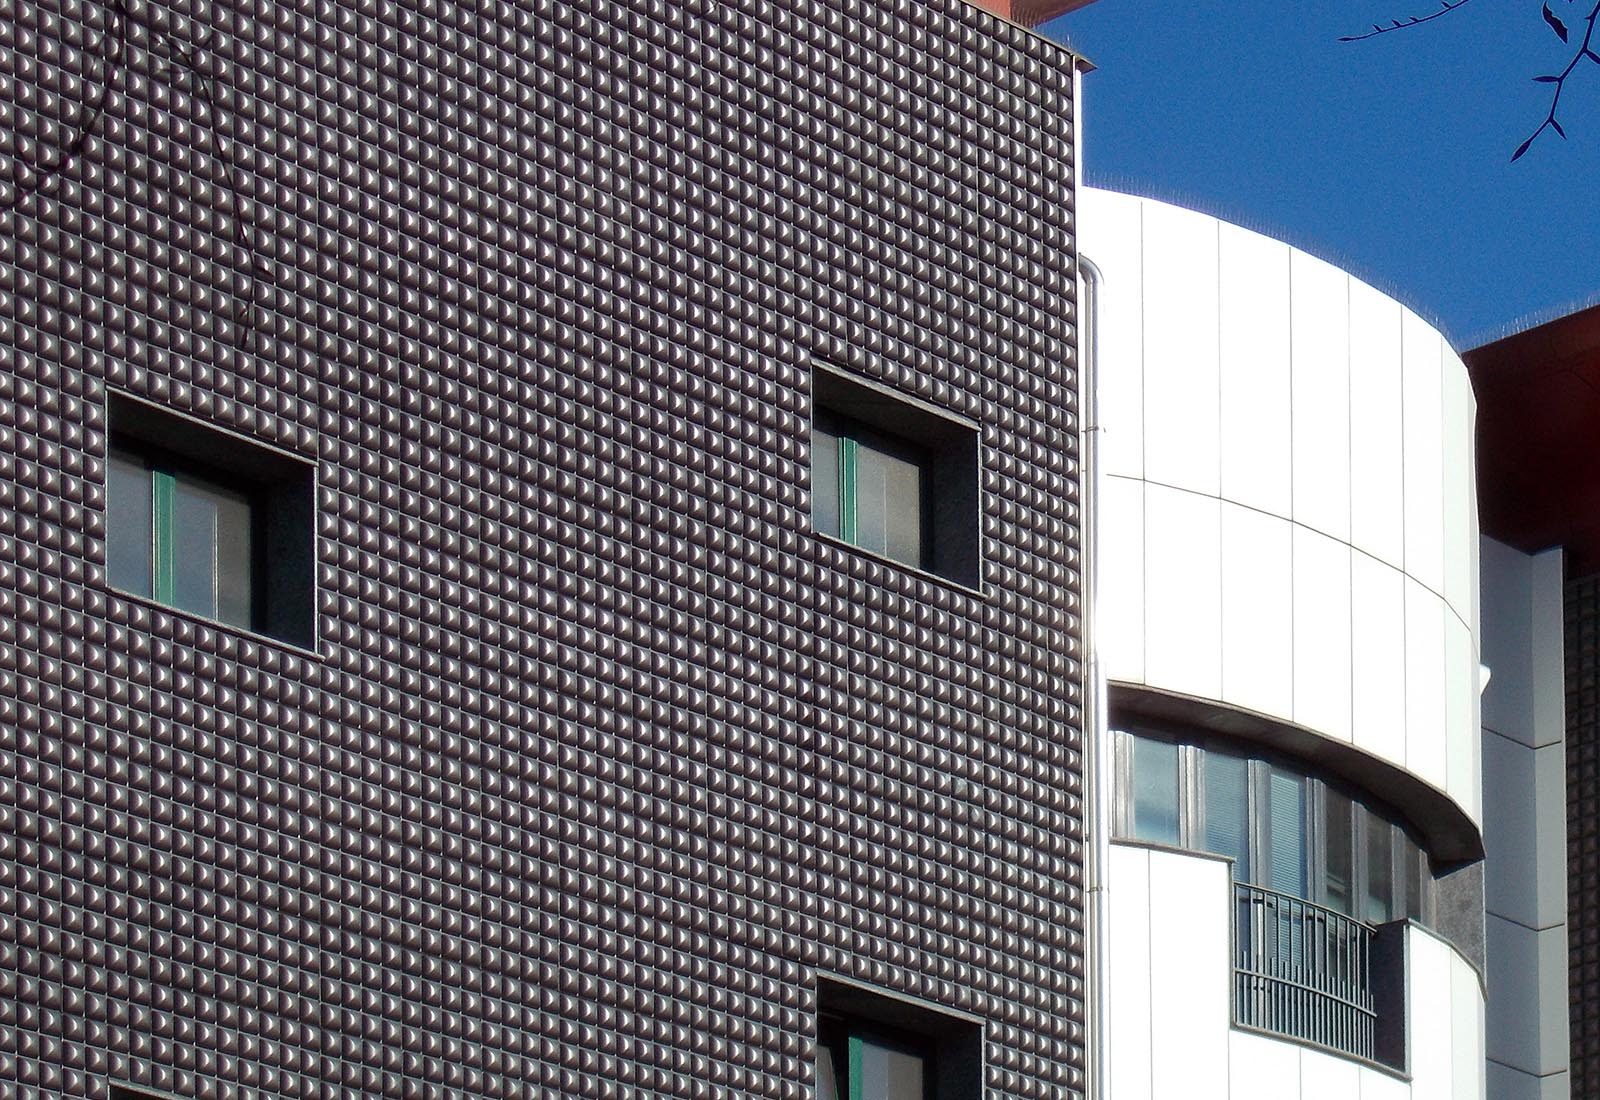 Building 22 Politecnico di Milano - Detail